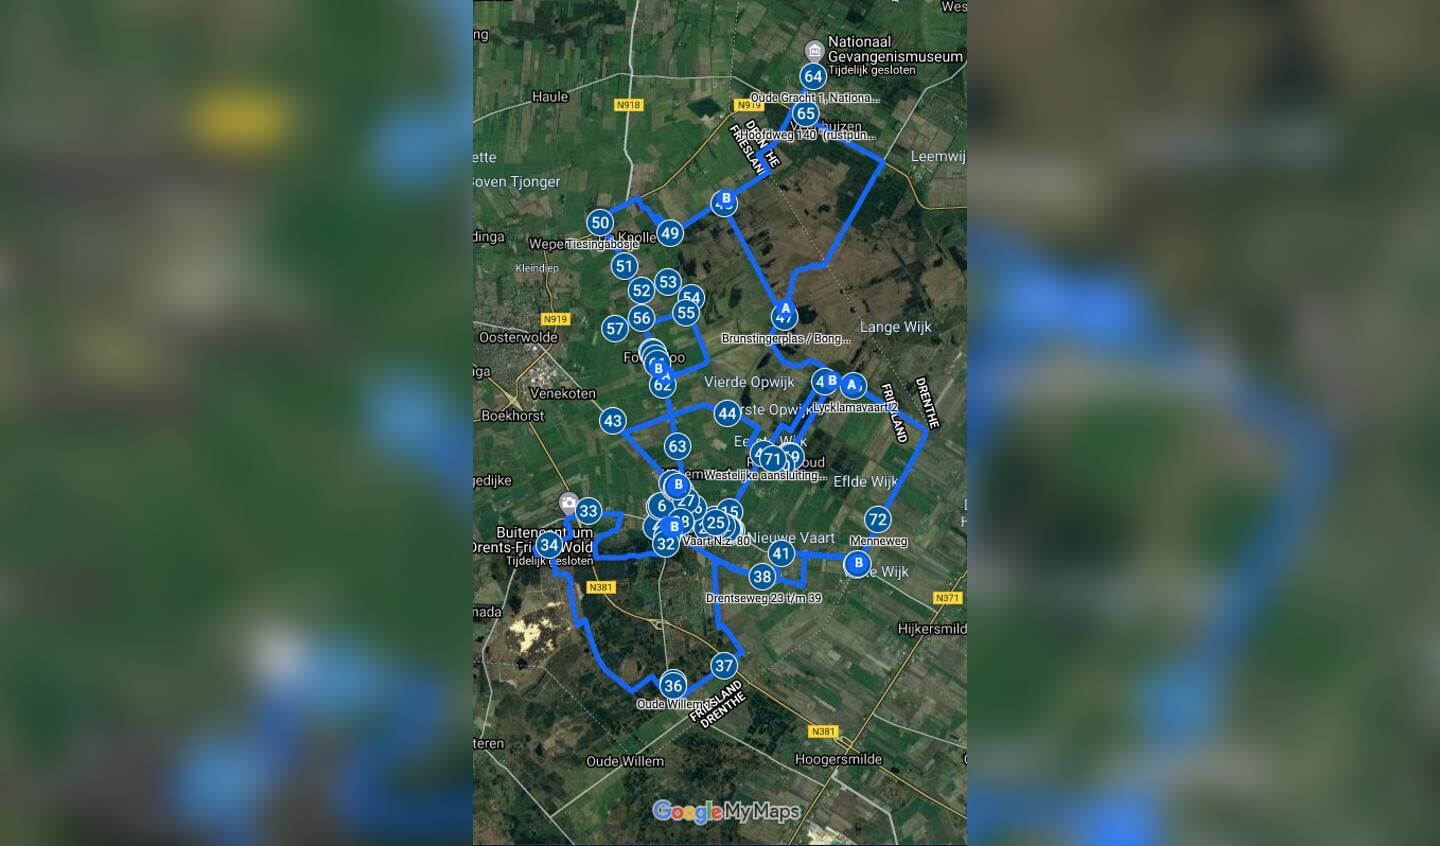 De route op hoofdlijnen. Kijk op de website historische-route.nl als je'm gedetailleerder wilt zien.